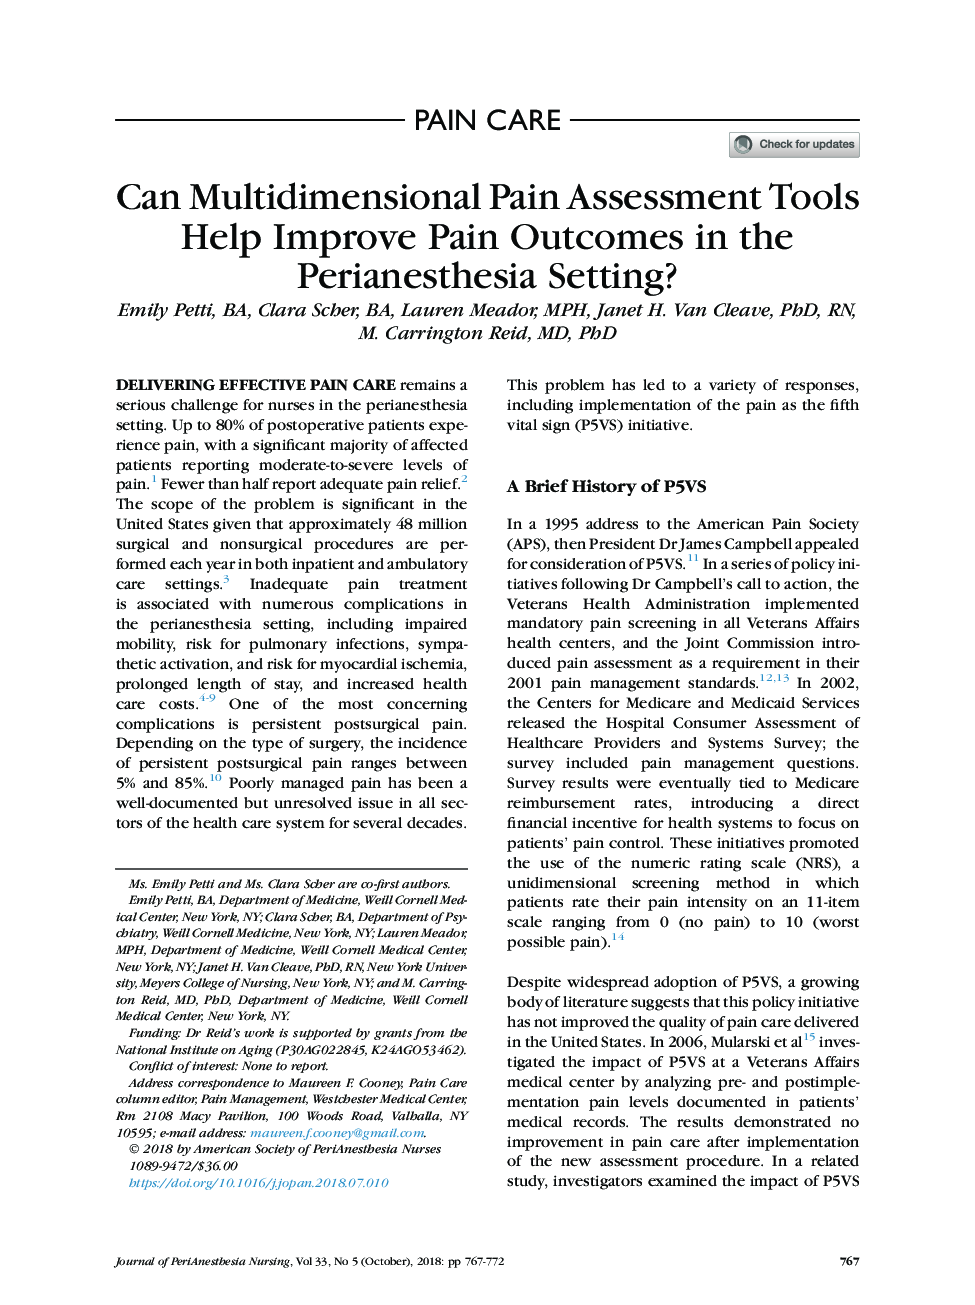 آیا ابزارهای ارزیابی درد چندین روش کمک می کند تا نتایج درد در تنظیم پروینستازی بهبود یابد؟